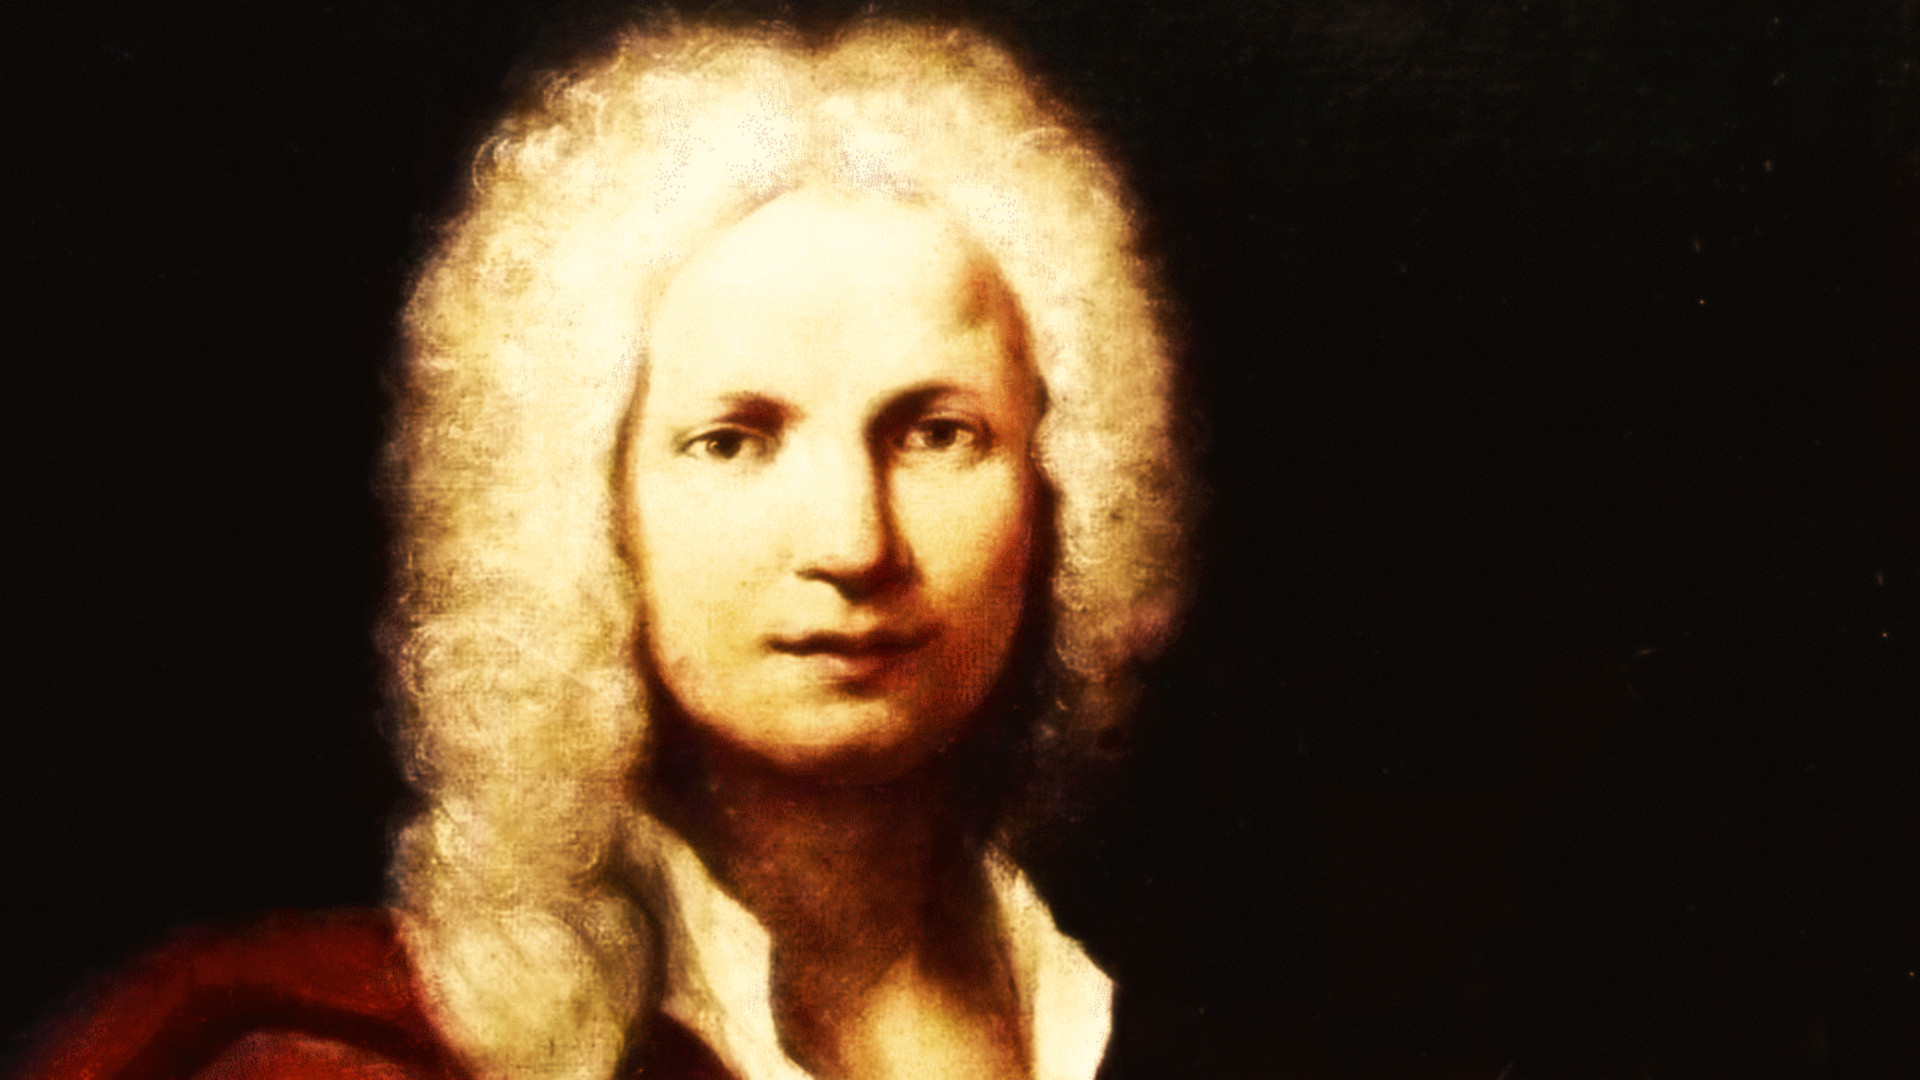 Sinfonia av Antonio Vivaldi